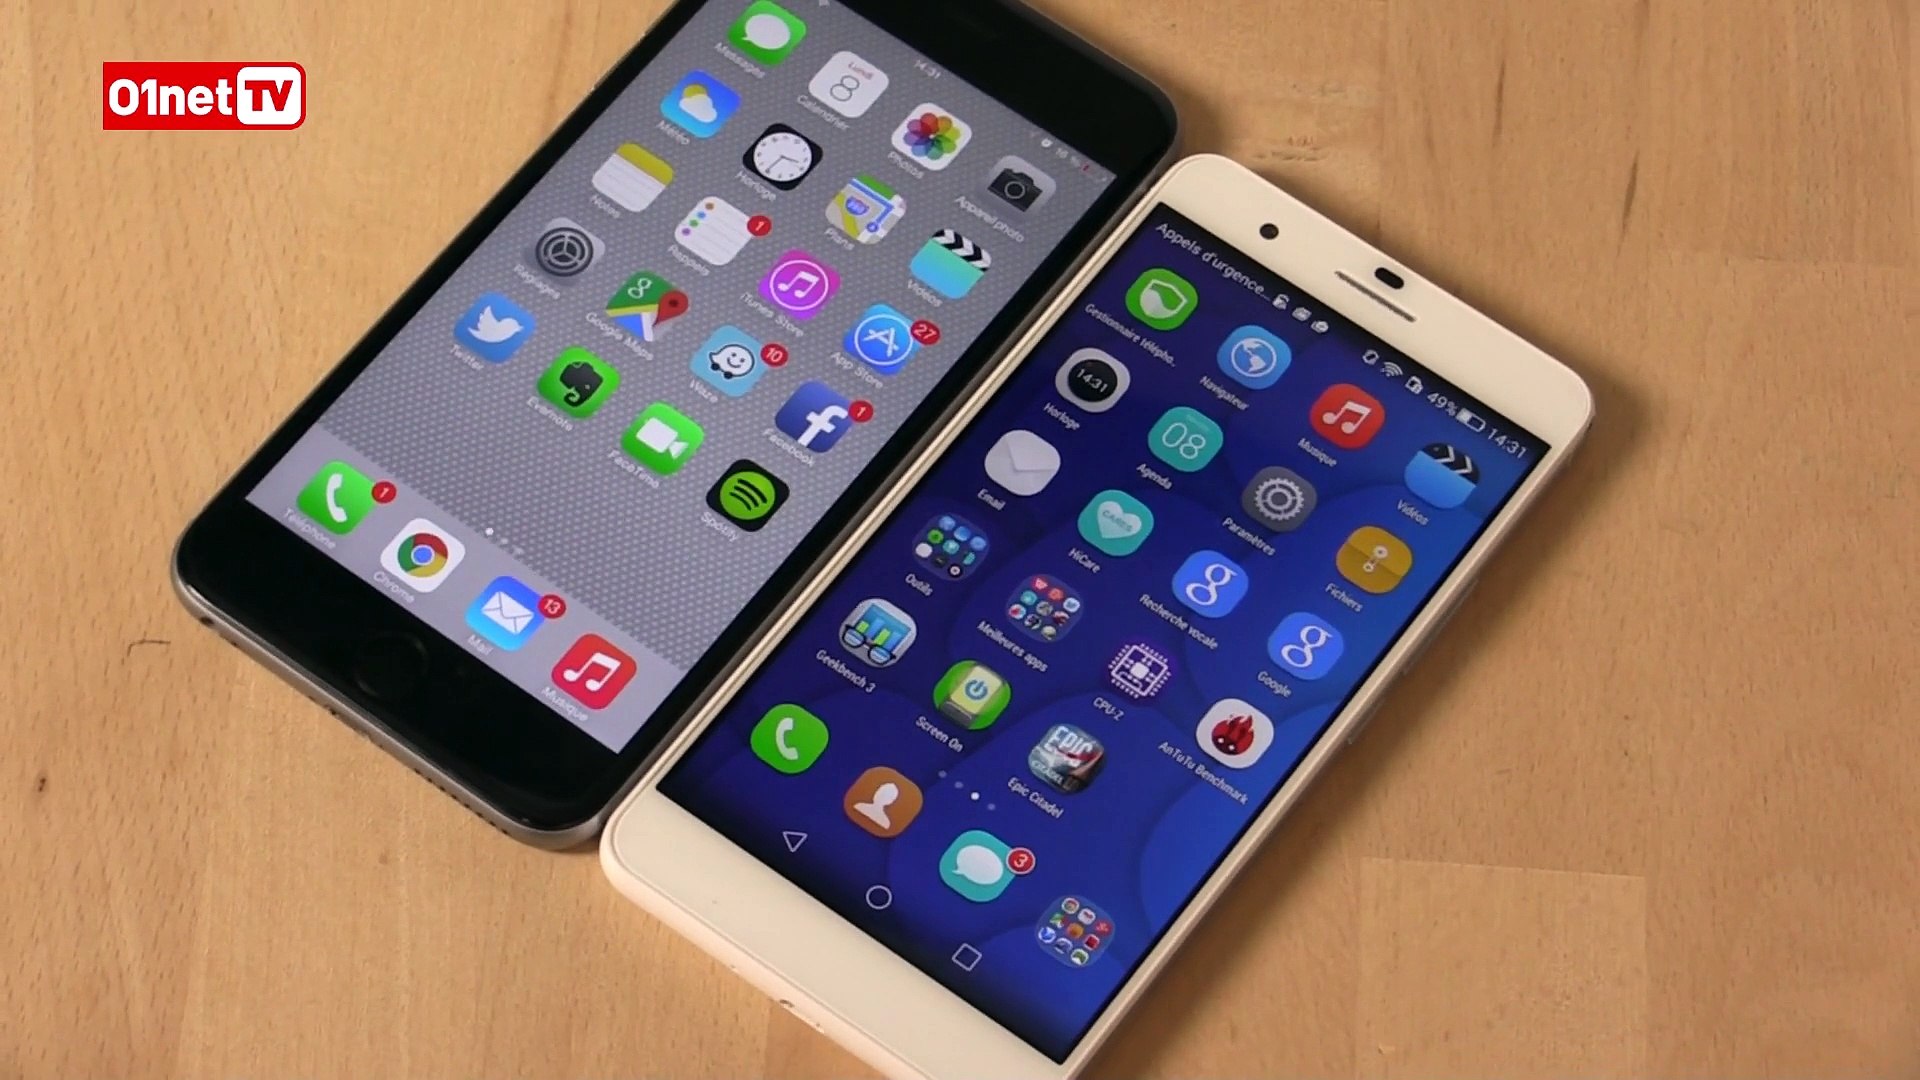 Honor 6 Plus : mieux que l'iPhone 6 Plus ? - Vidéo Dailymotion